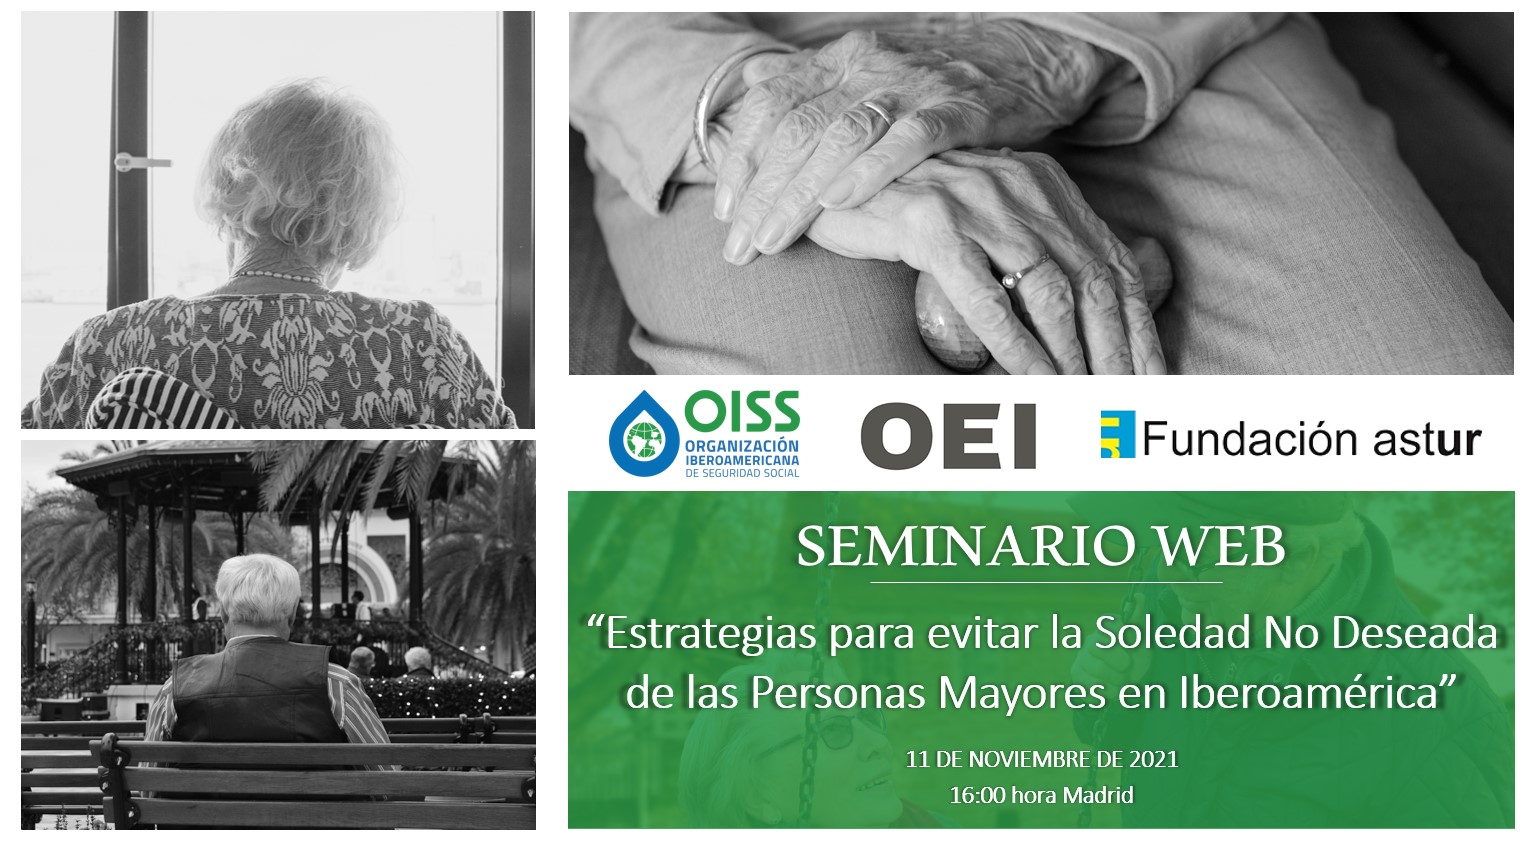 INVITACIÓN_Seminario Web 11NOV.: “Estrategias para evitar la soledad no deseada de las personas mayores en Iberoamérica”